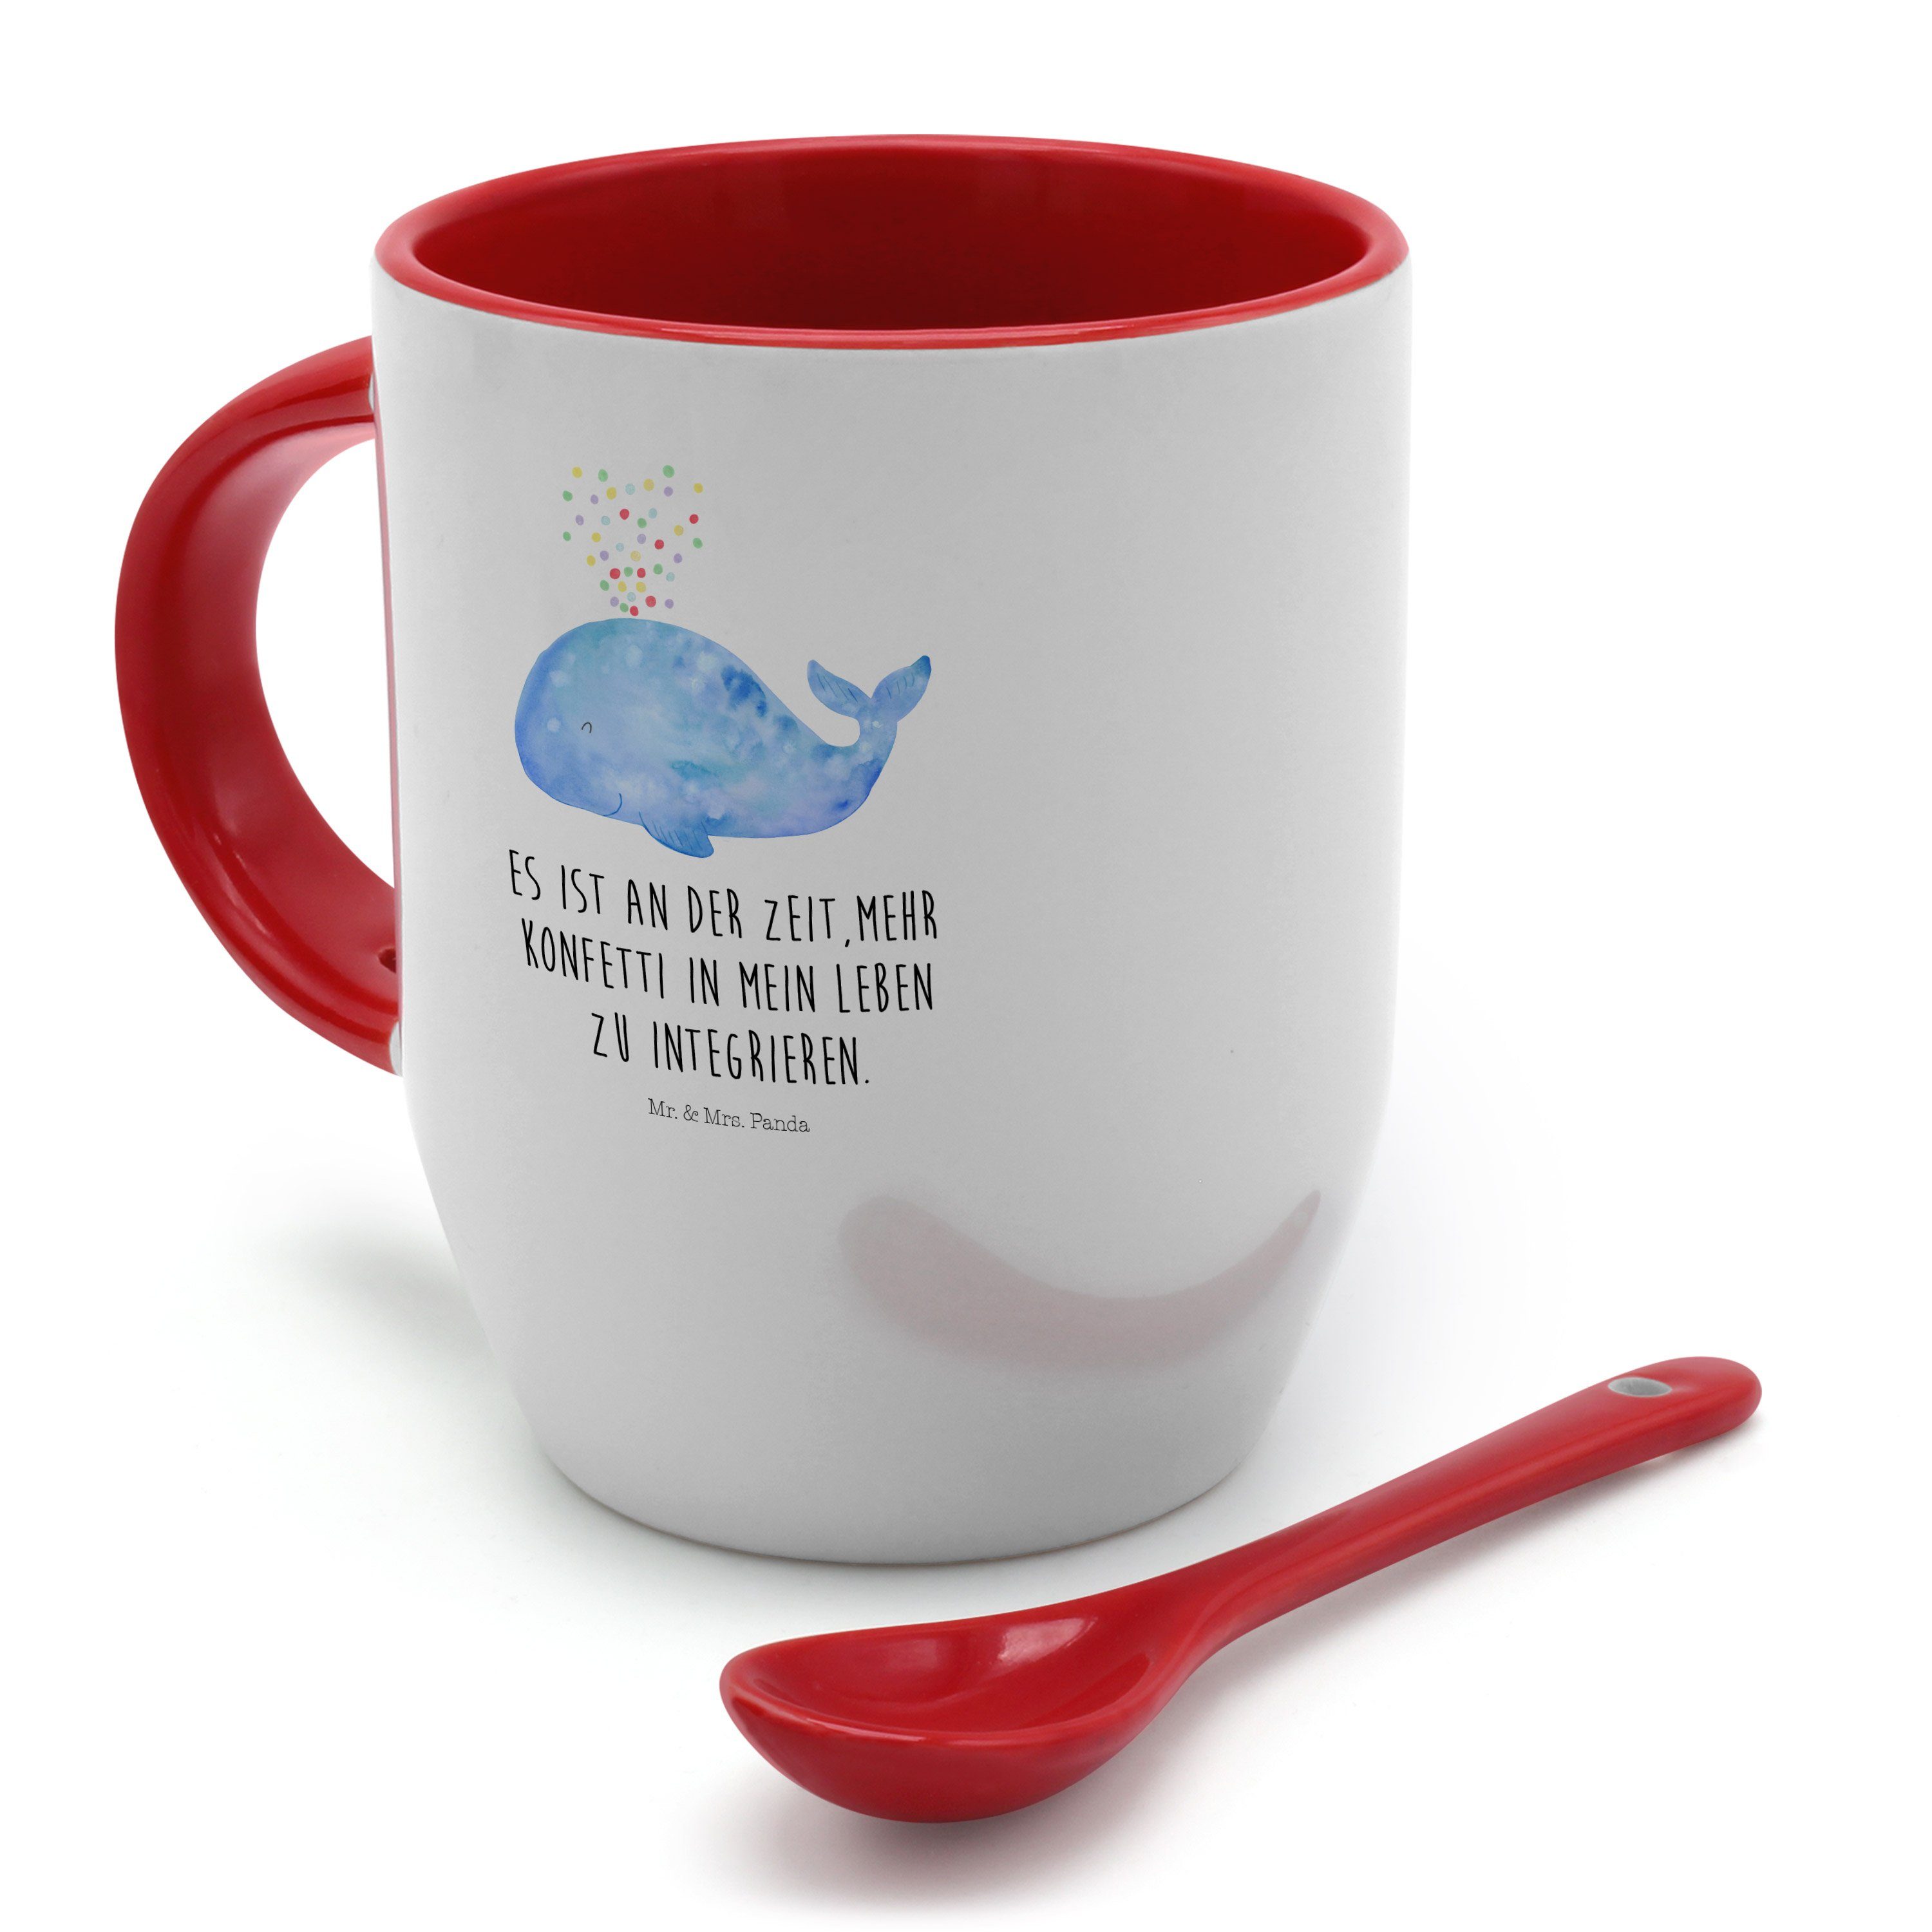 Mr. & Mrs. Panda Tasse Tasse, Geschenk, Lebensabschnitt, Konfetti Kaffeebecher, - - Keramik Wal Weiß